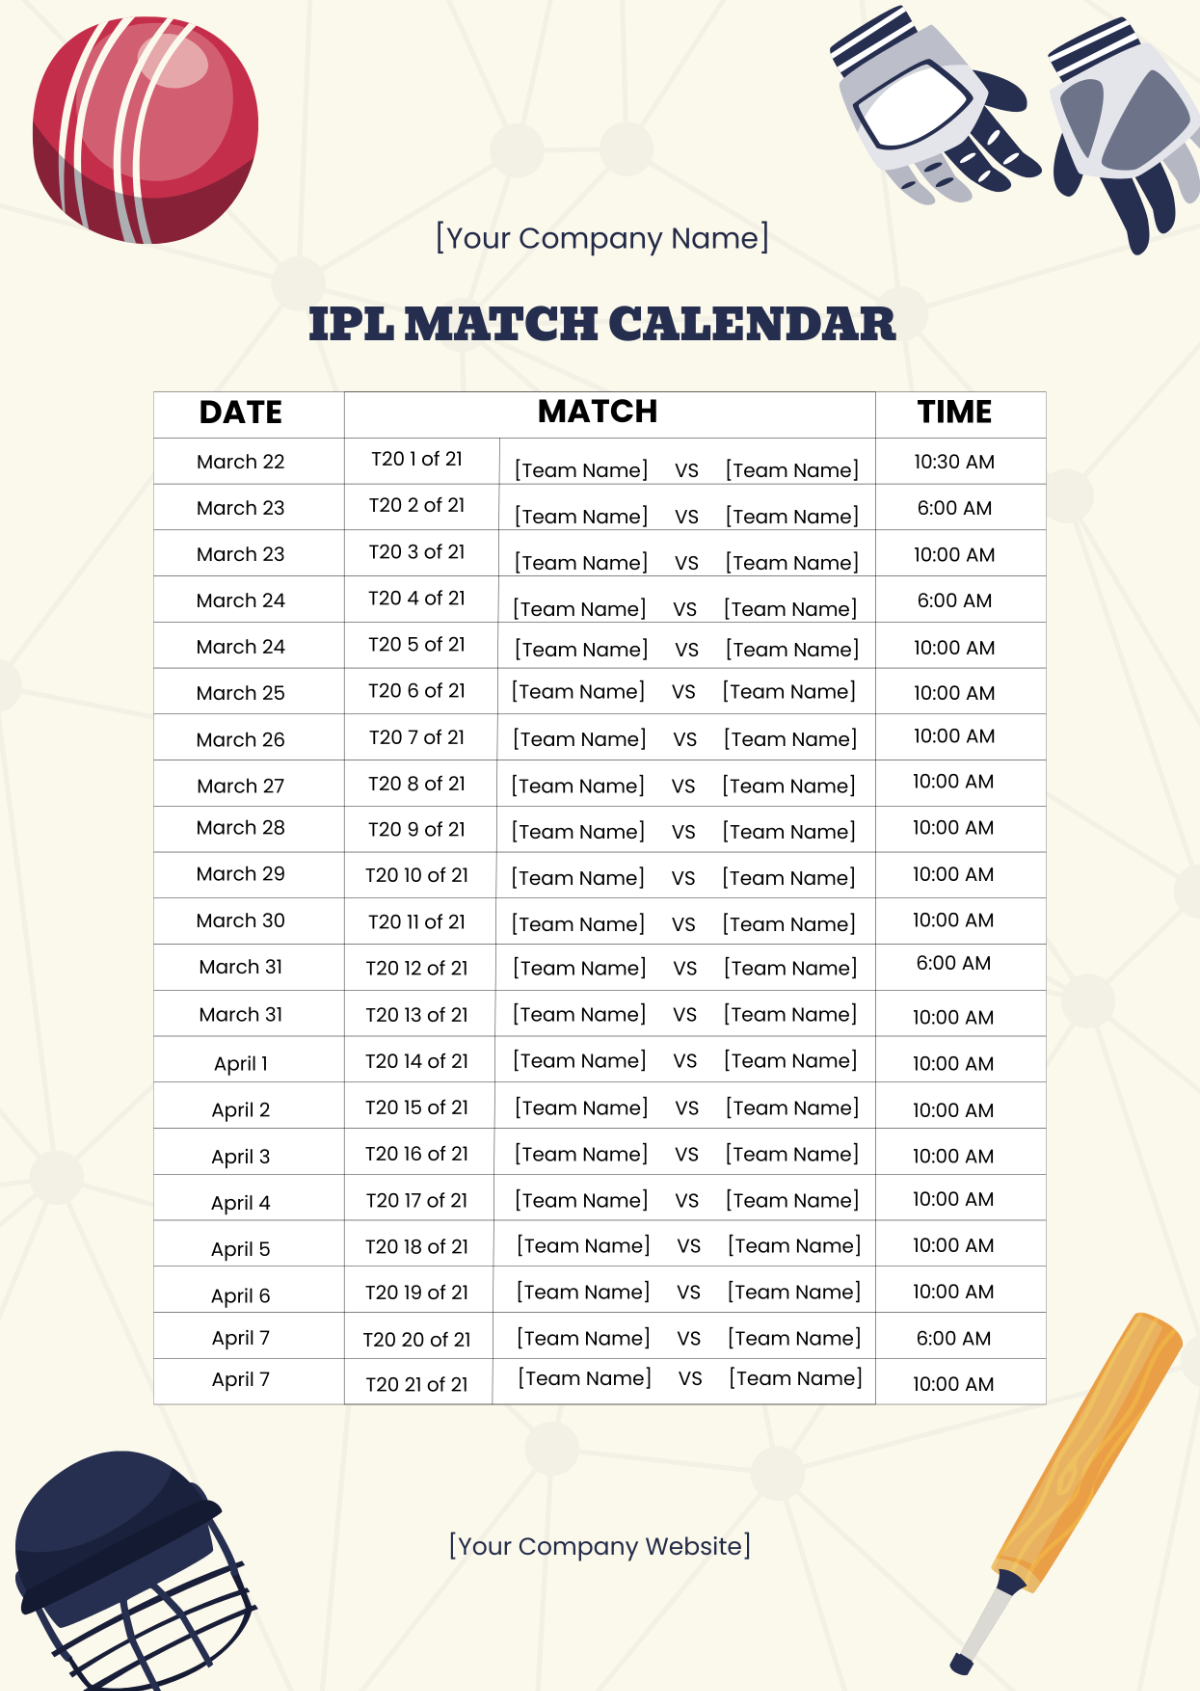 IPL Match Calendar Template